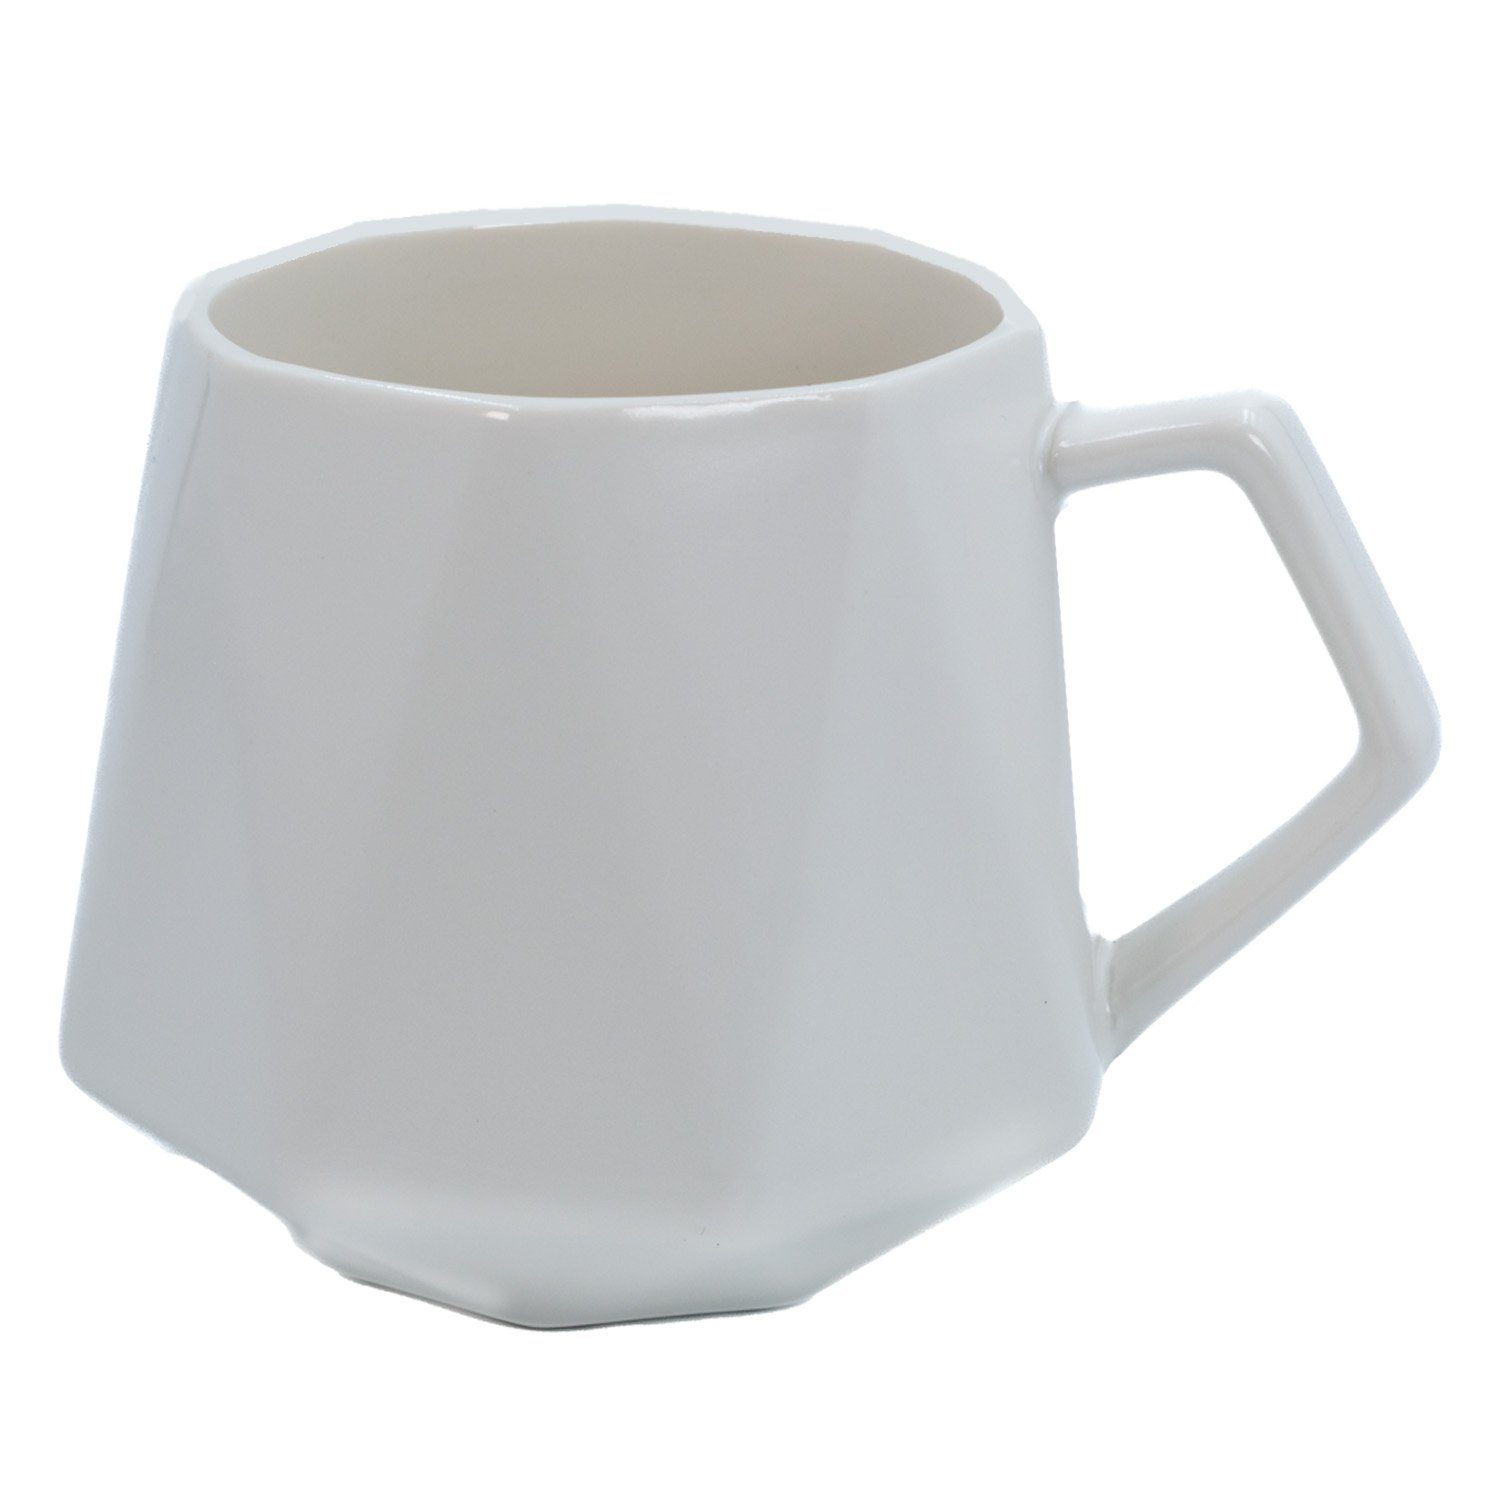 Intirilife Tasse, Keramik, Kaffee Tasse in Feinschliff Optik in Weiß mit 350 ml